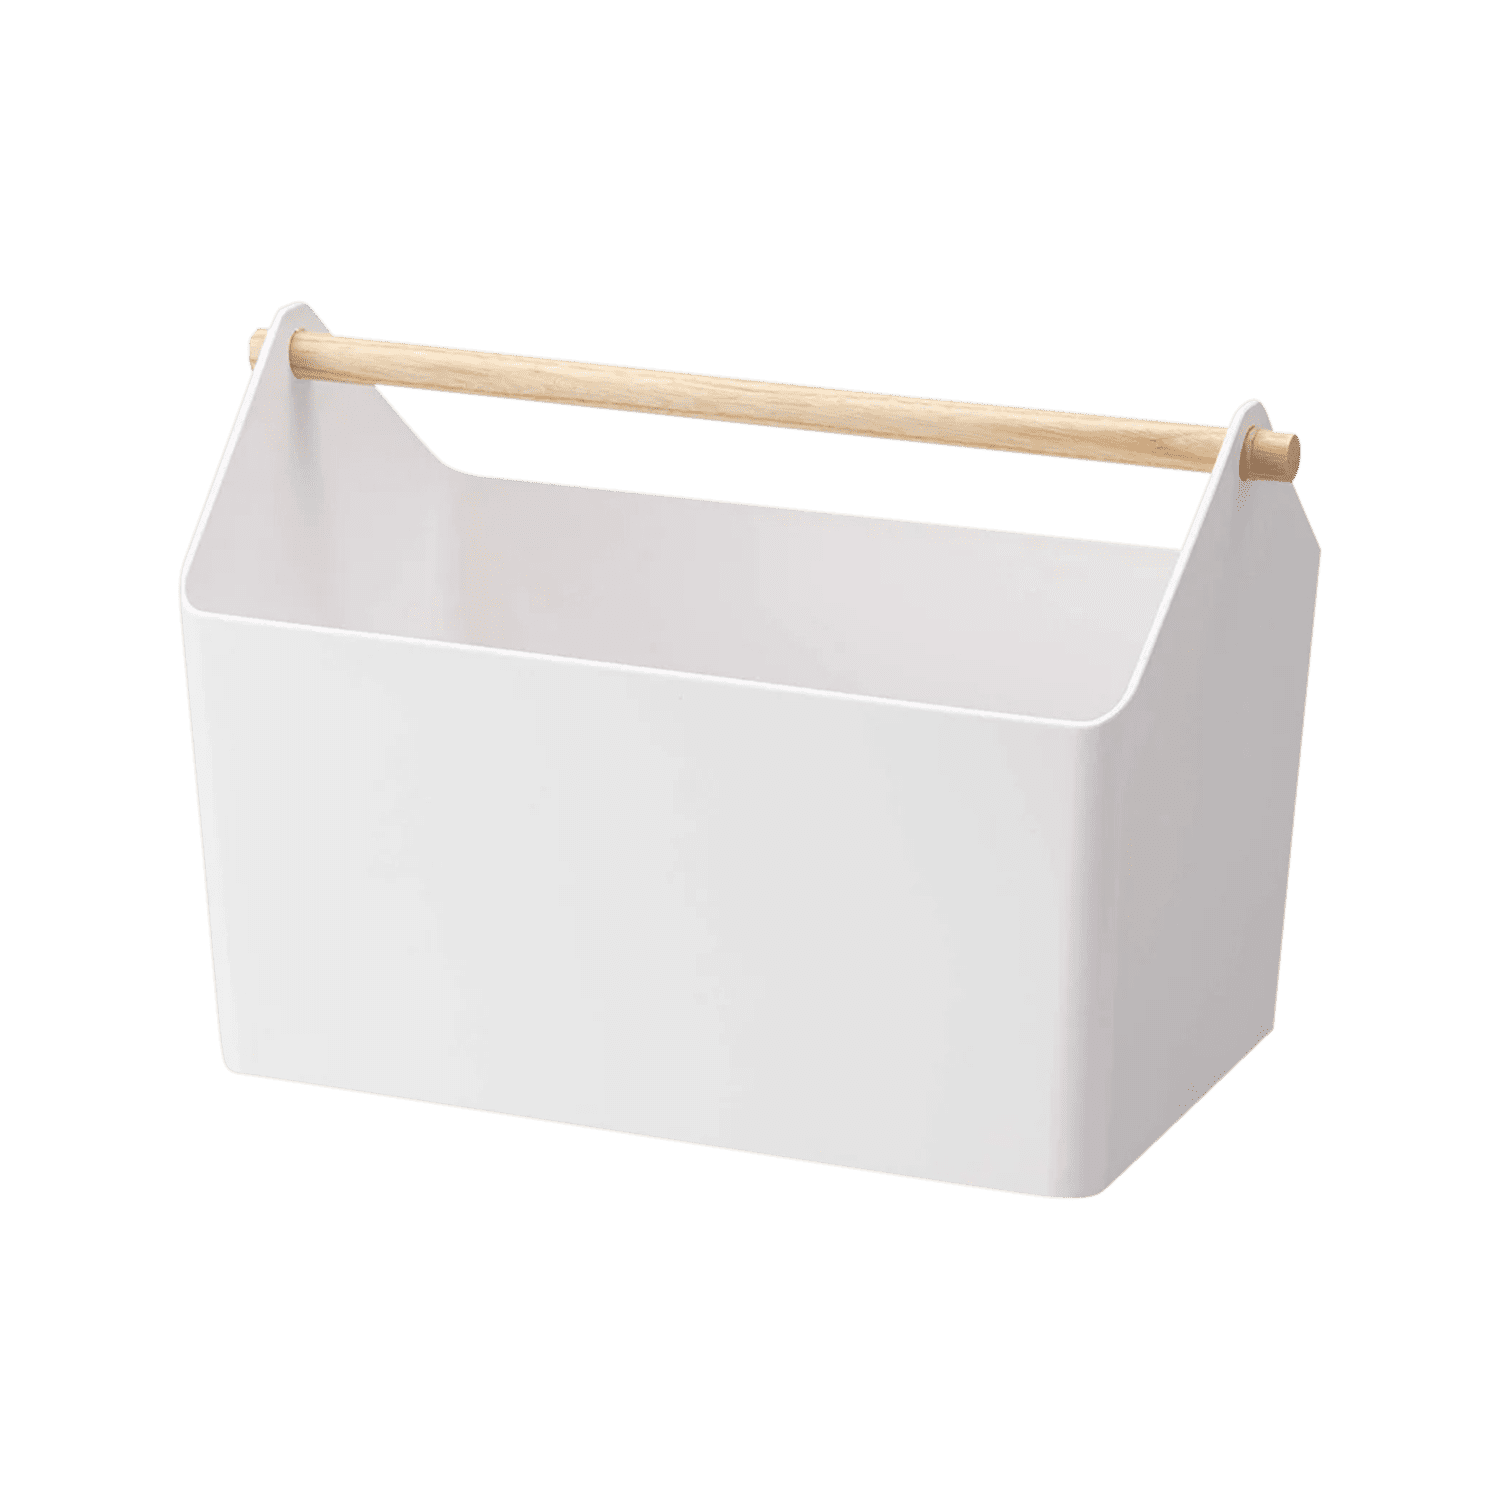 YAMAZAKI Home Storage Organizer/Cleaning Caddy/Storage Basket With